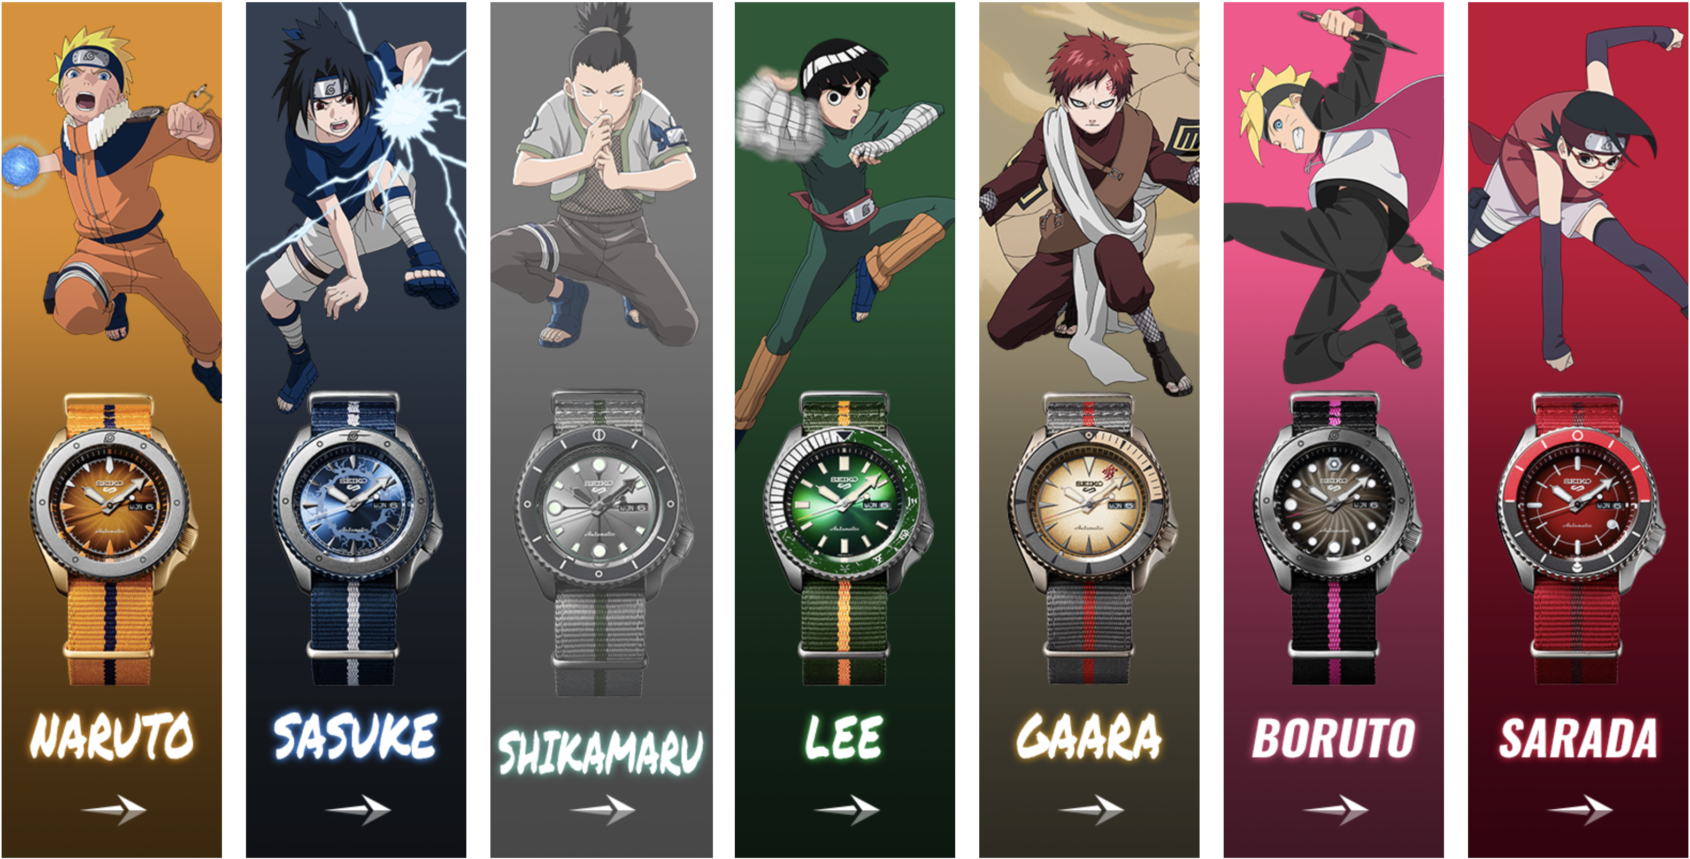 Koleksi Jam Tangan Seiko 5 Sports yang Terinspirasi dari Anime Naruto dan Boruto Edisi Terbatas